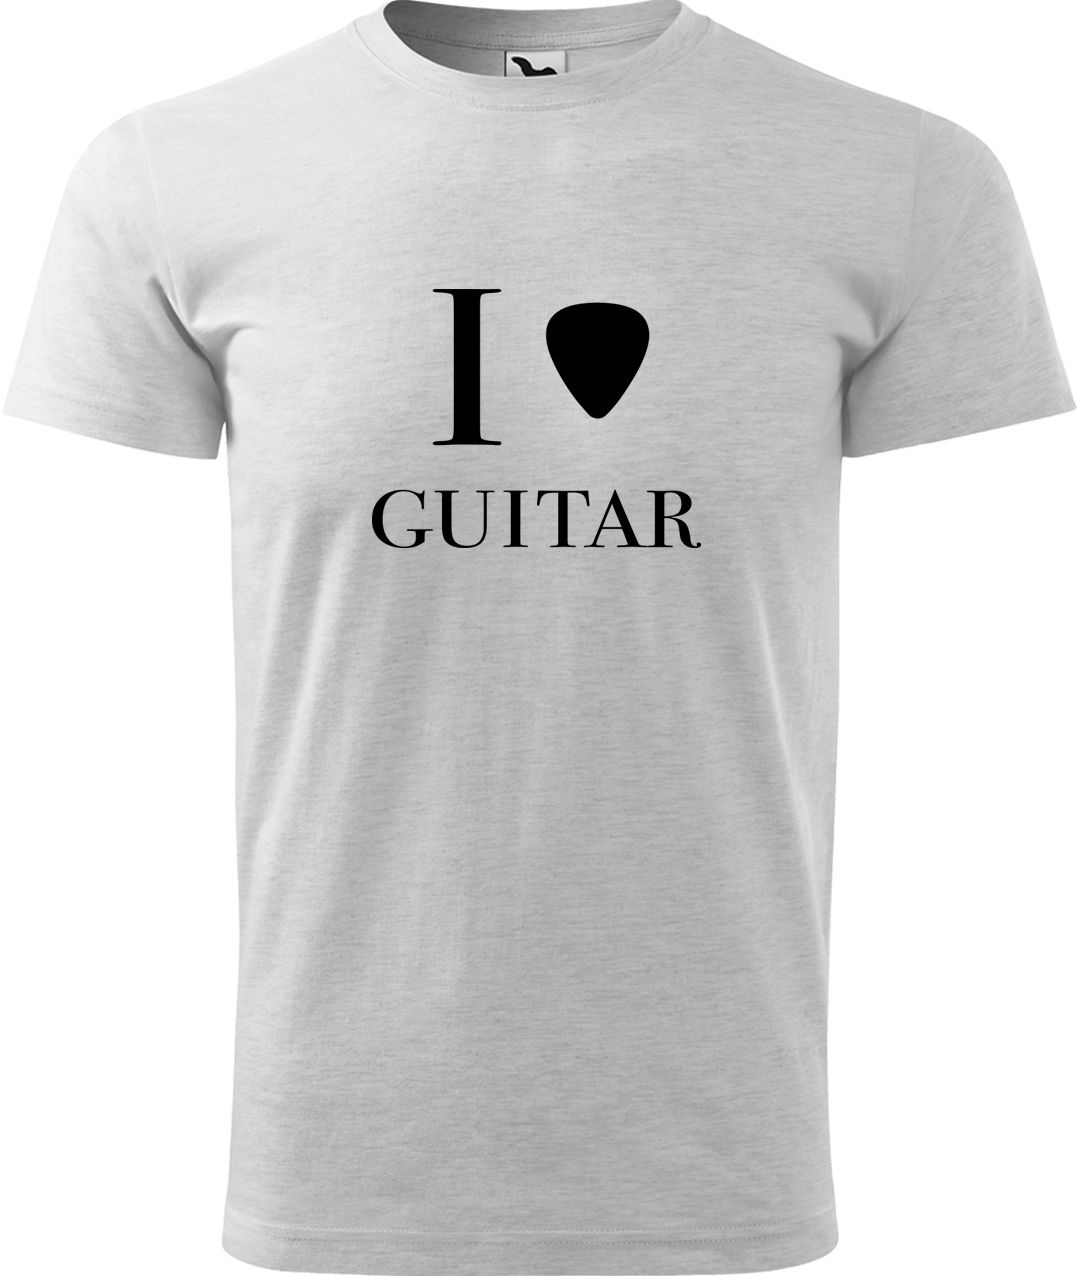 Pánské tričko s kytarou - I love guitar Velikost: M, Barva: Světle šedý melír (03), Střih: pánský